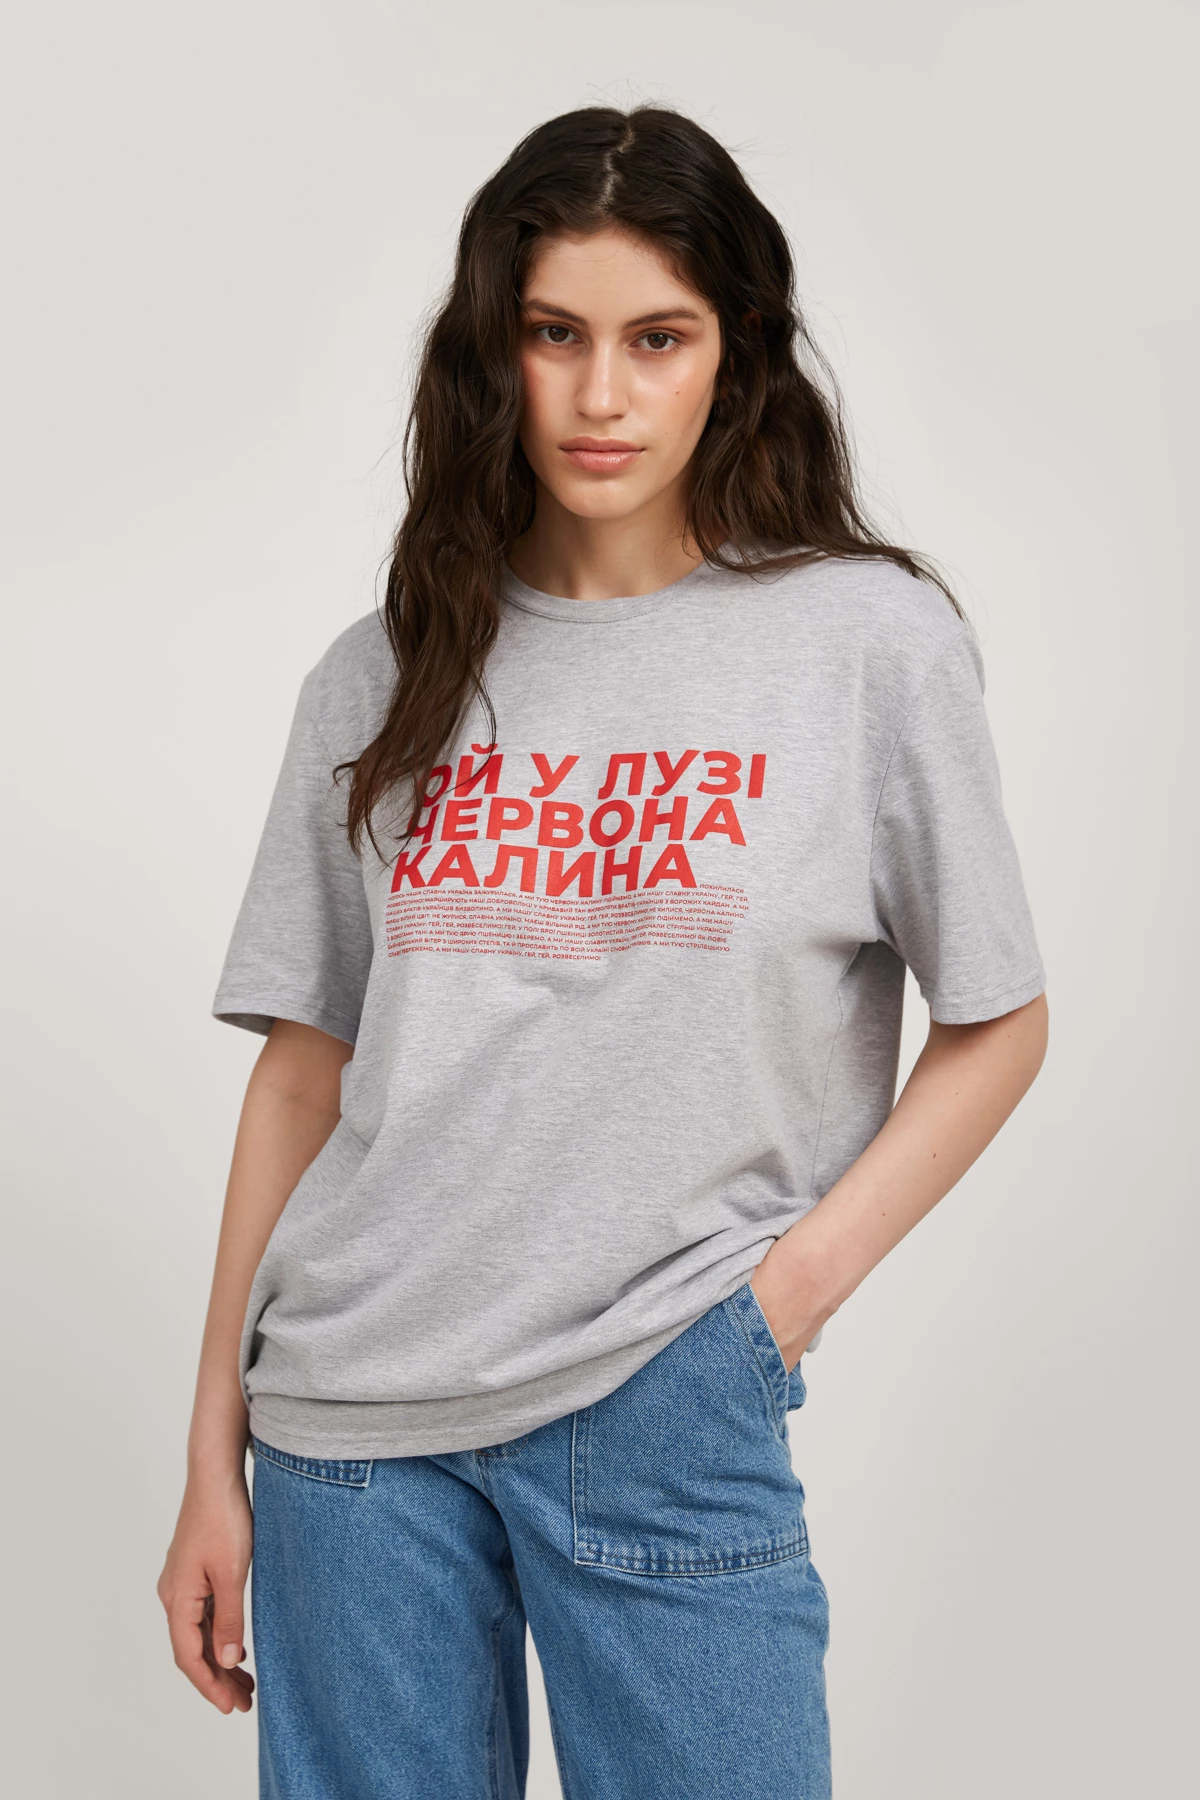  Grey-melange unisex T-shirt "Chervona kalyna", photo 4